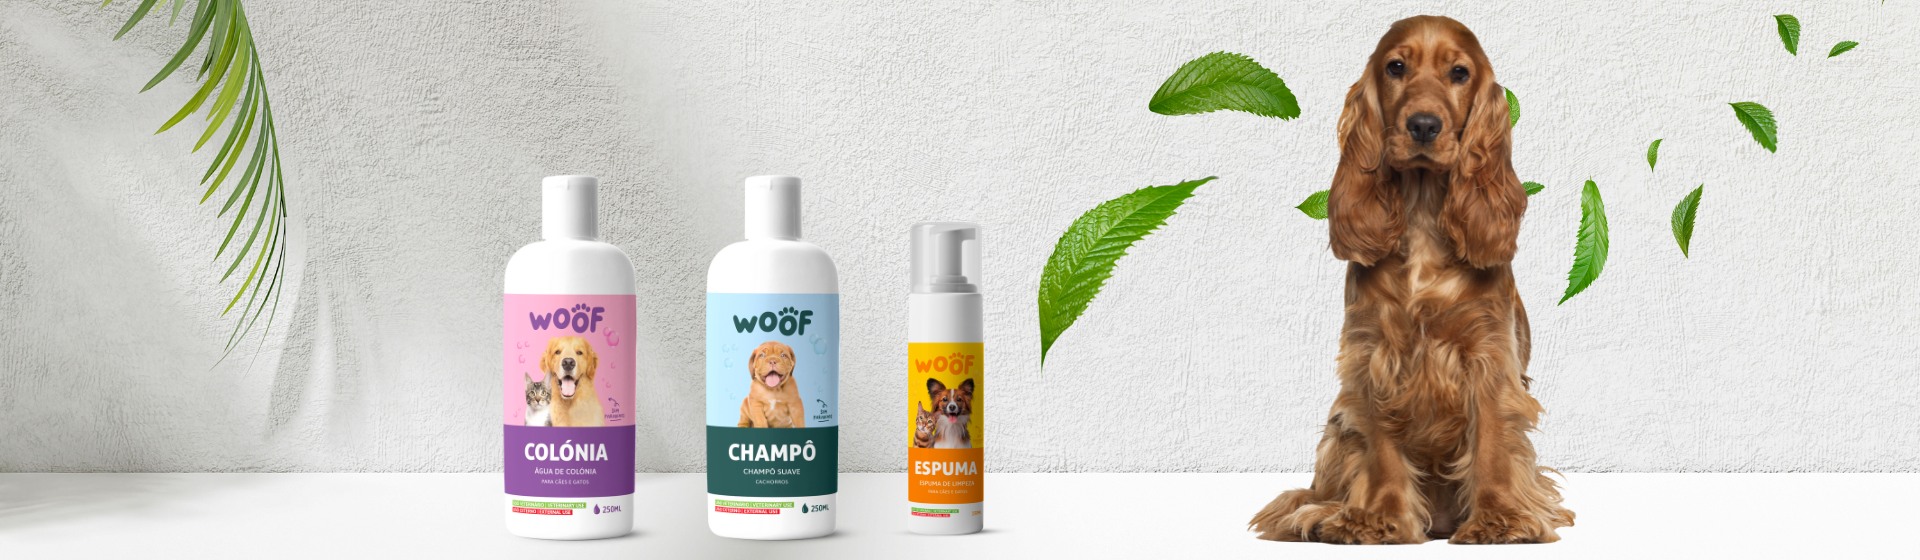 WOOF – new brand